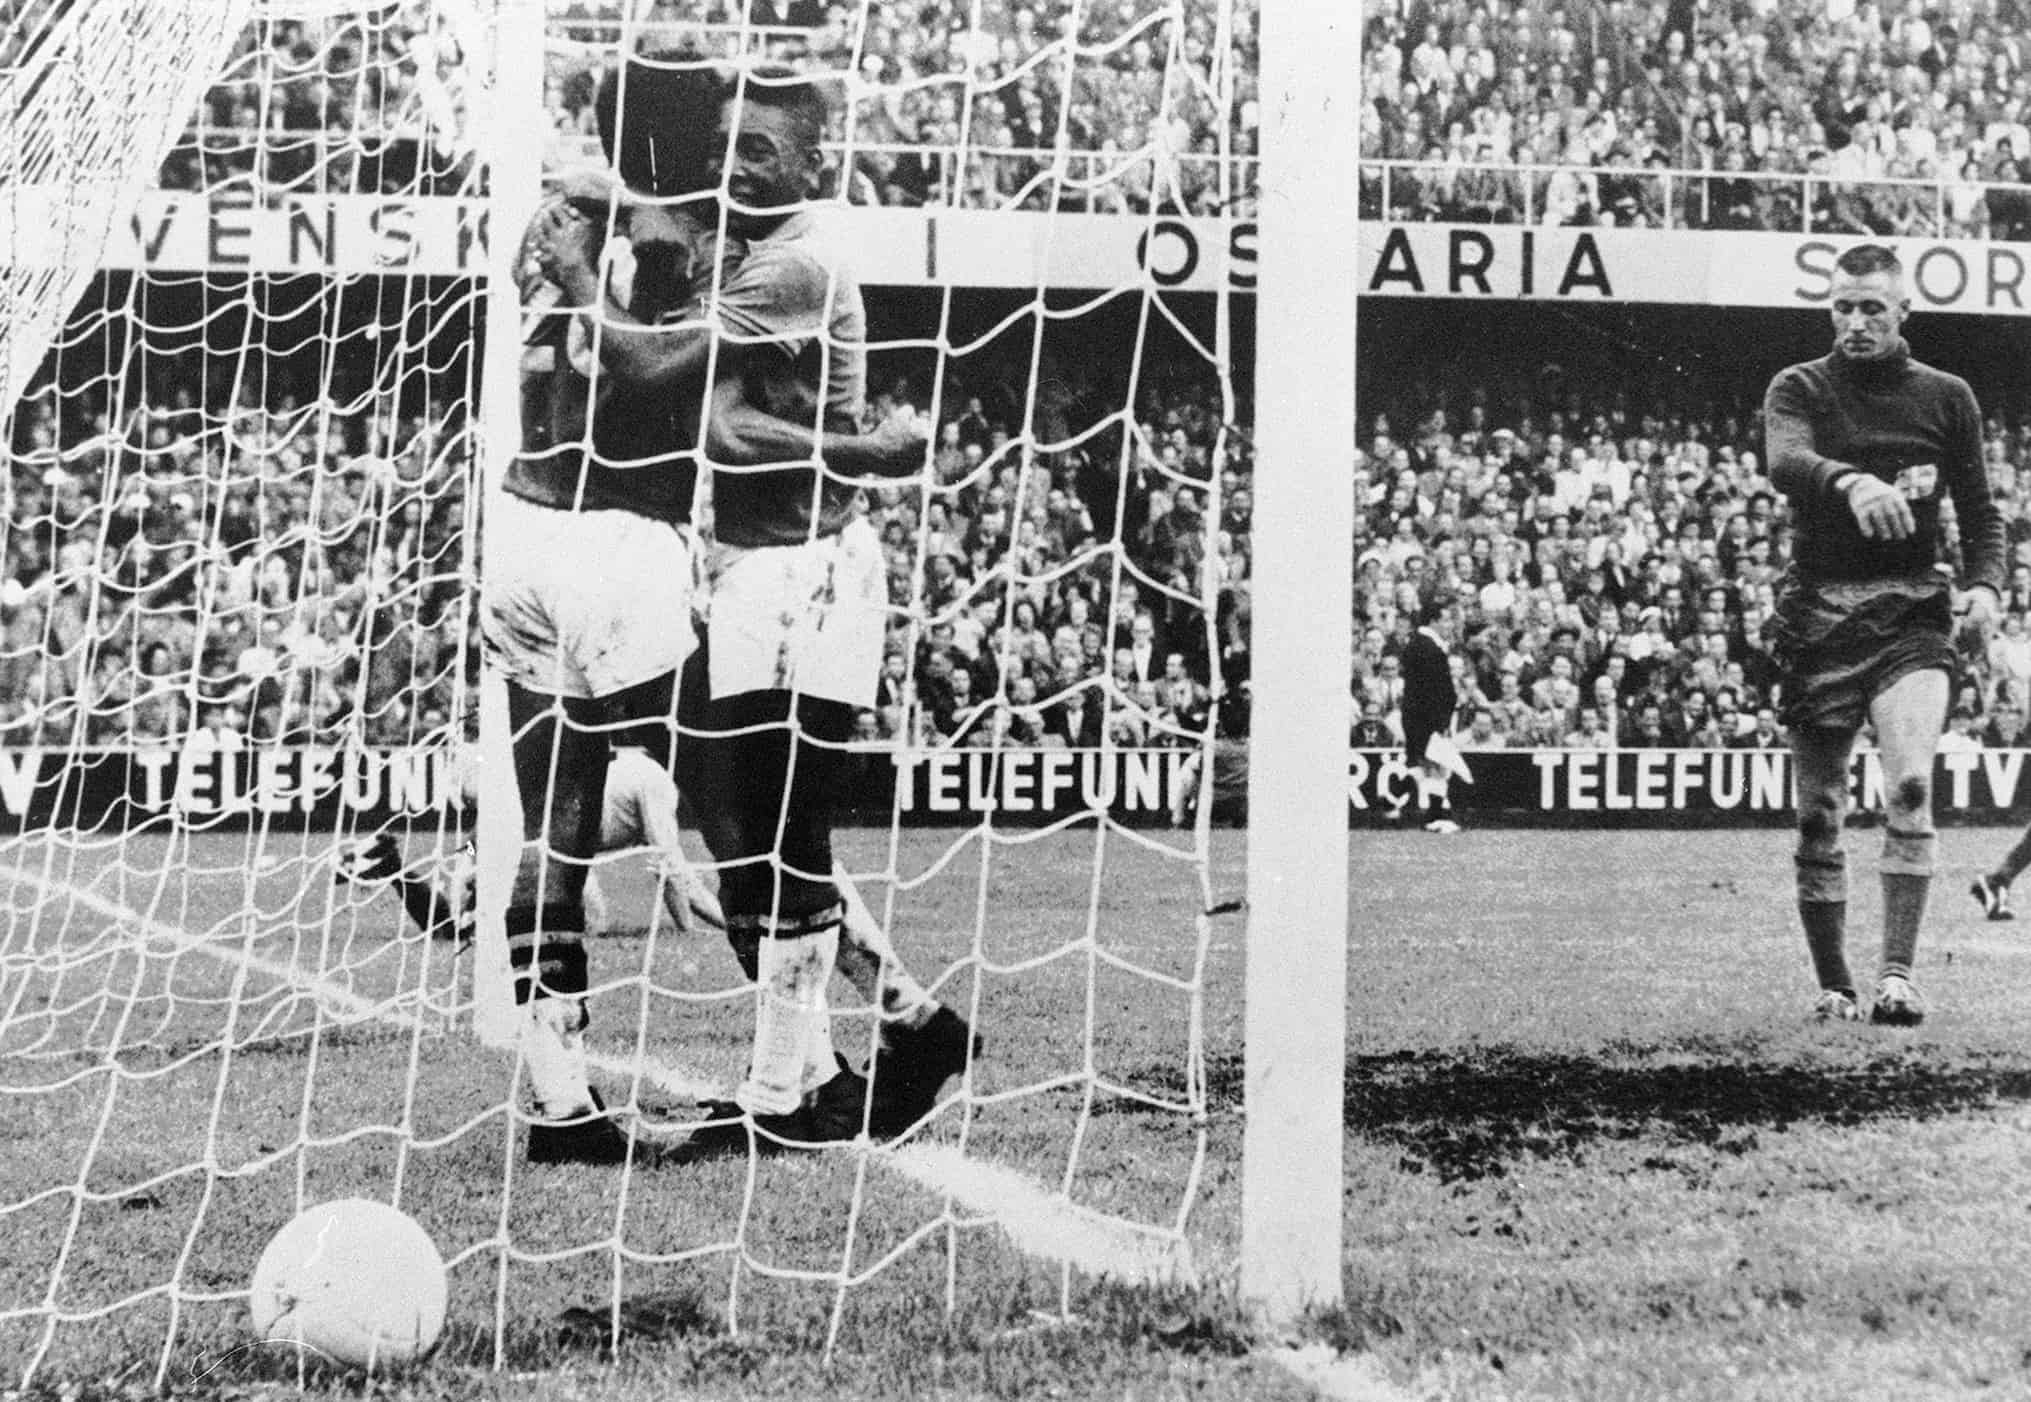 El delantero brasileño Pelé (centro) felicita a su compañero de equipo Vava (20) después de marcar un gol cuando el portero sueco Karl Svensson reacciona el 28 de junio de 1958 en Estocolmo durante la final de la Copa del Mundo entre Brasil y Suecia. Vava y Pelé anotaron dos goles cada uno cuando Brasil ganó su primer título venciendo al anfitrión de la Copa del Mundo Suecia 5-2.